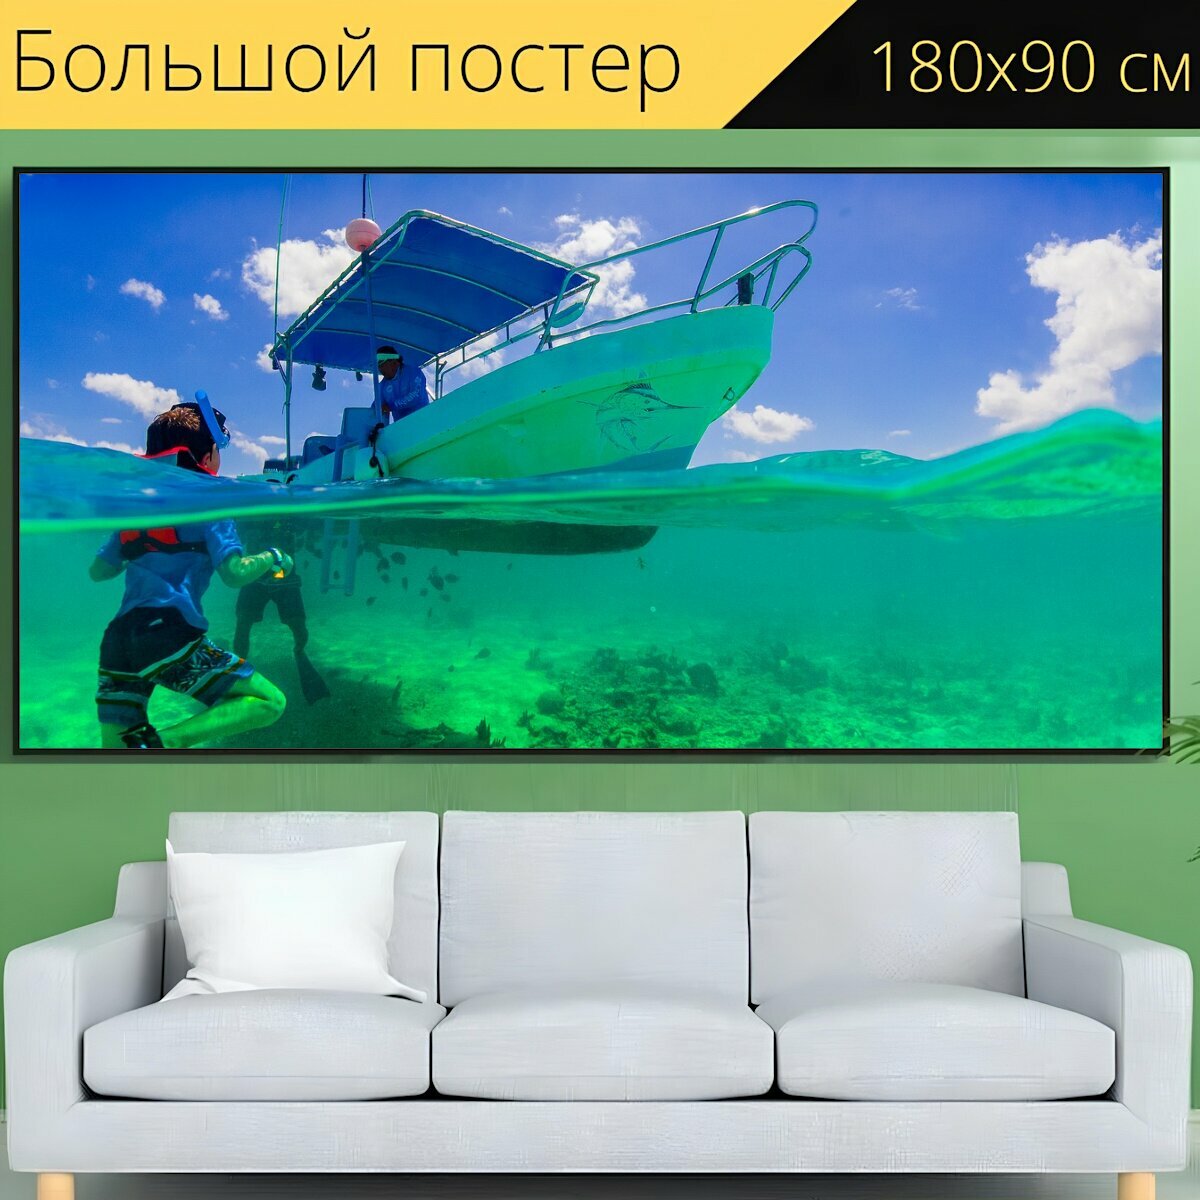 Большой постер "Туризм, лодка, канкун" 180 x 90 см. для интерьера